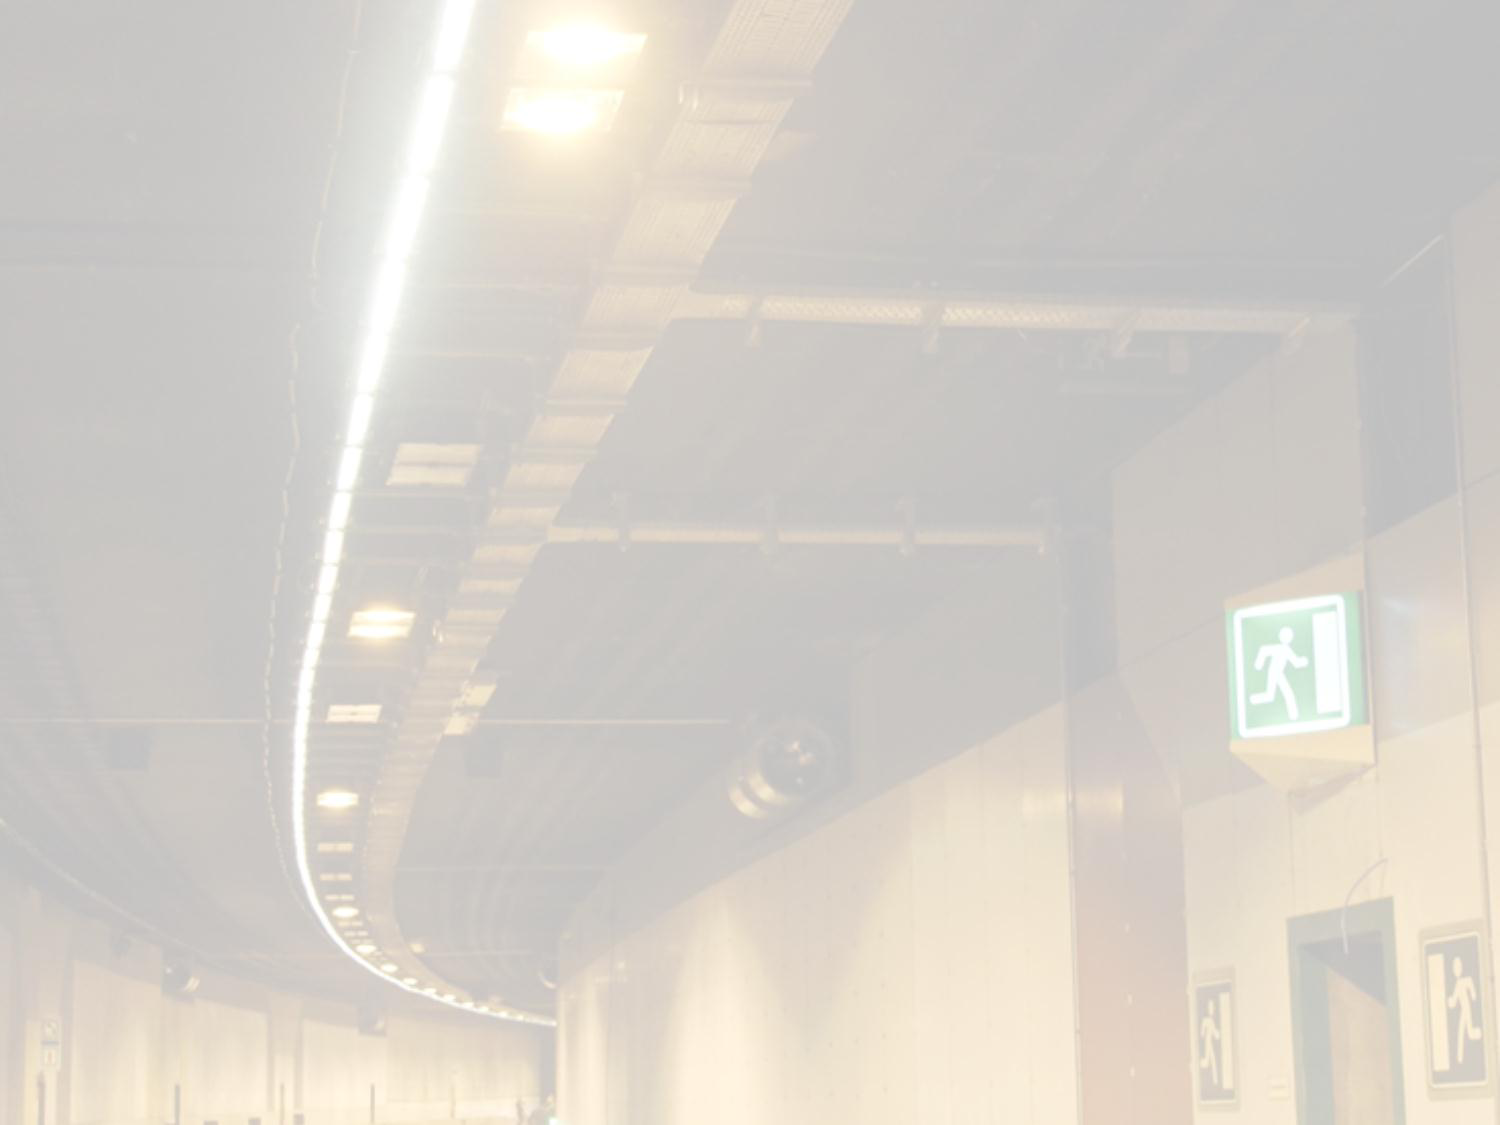 Proefproject LED-verlichting A12 Locatie: A12 afrit Stabroek - omgeving Km 42 Marktrijpheid testen LED-verlichtingstoestellen op ASW (AutoSnelWegen) Technische specificaties Lichtprestaties en